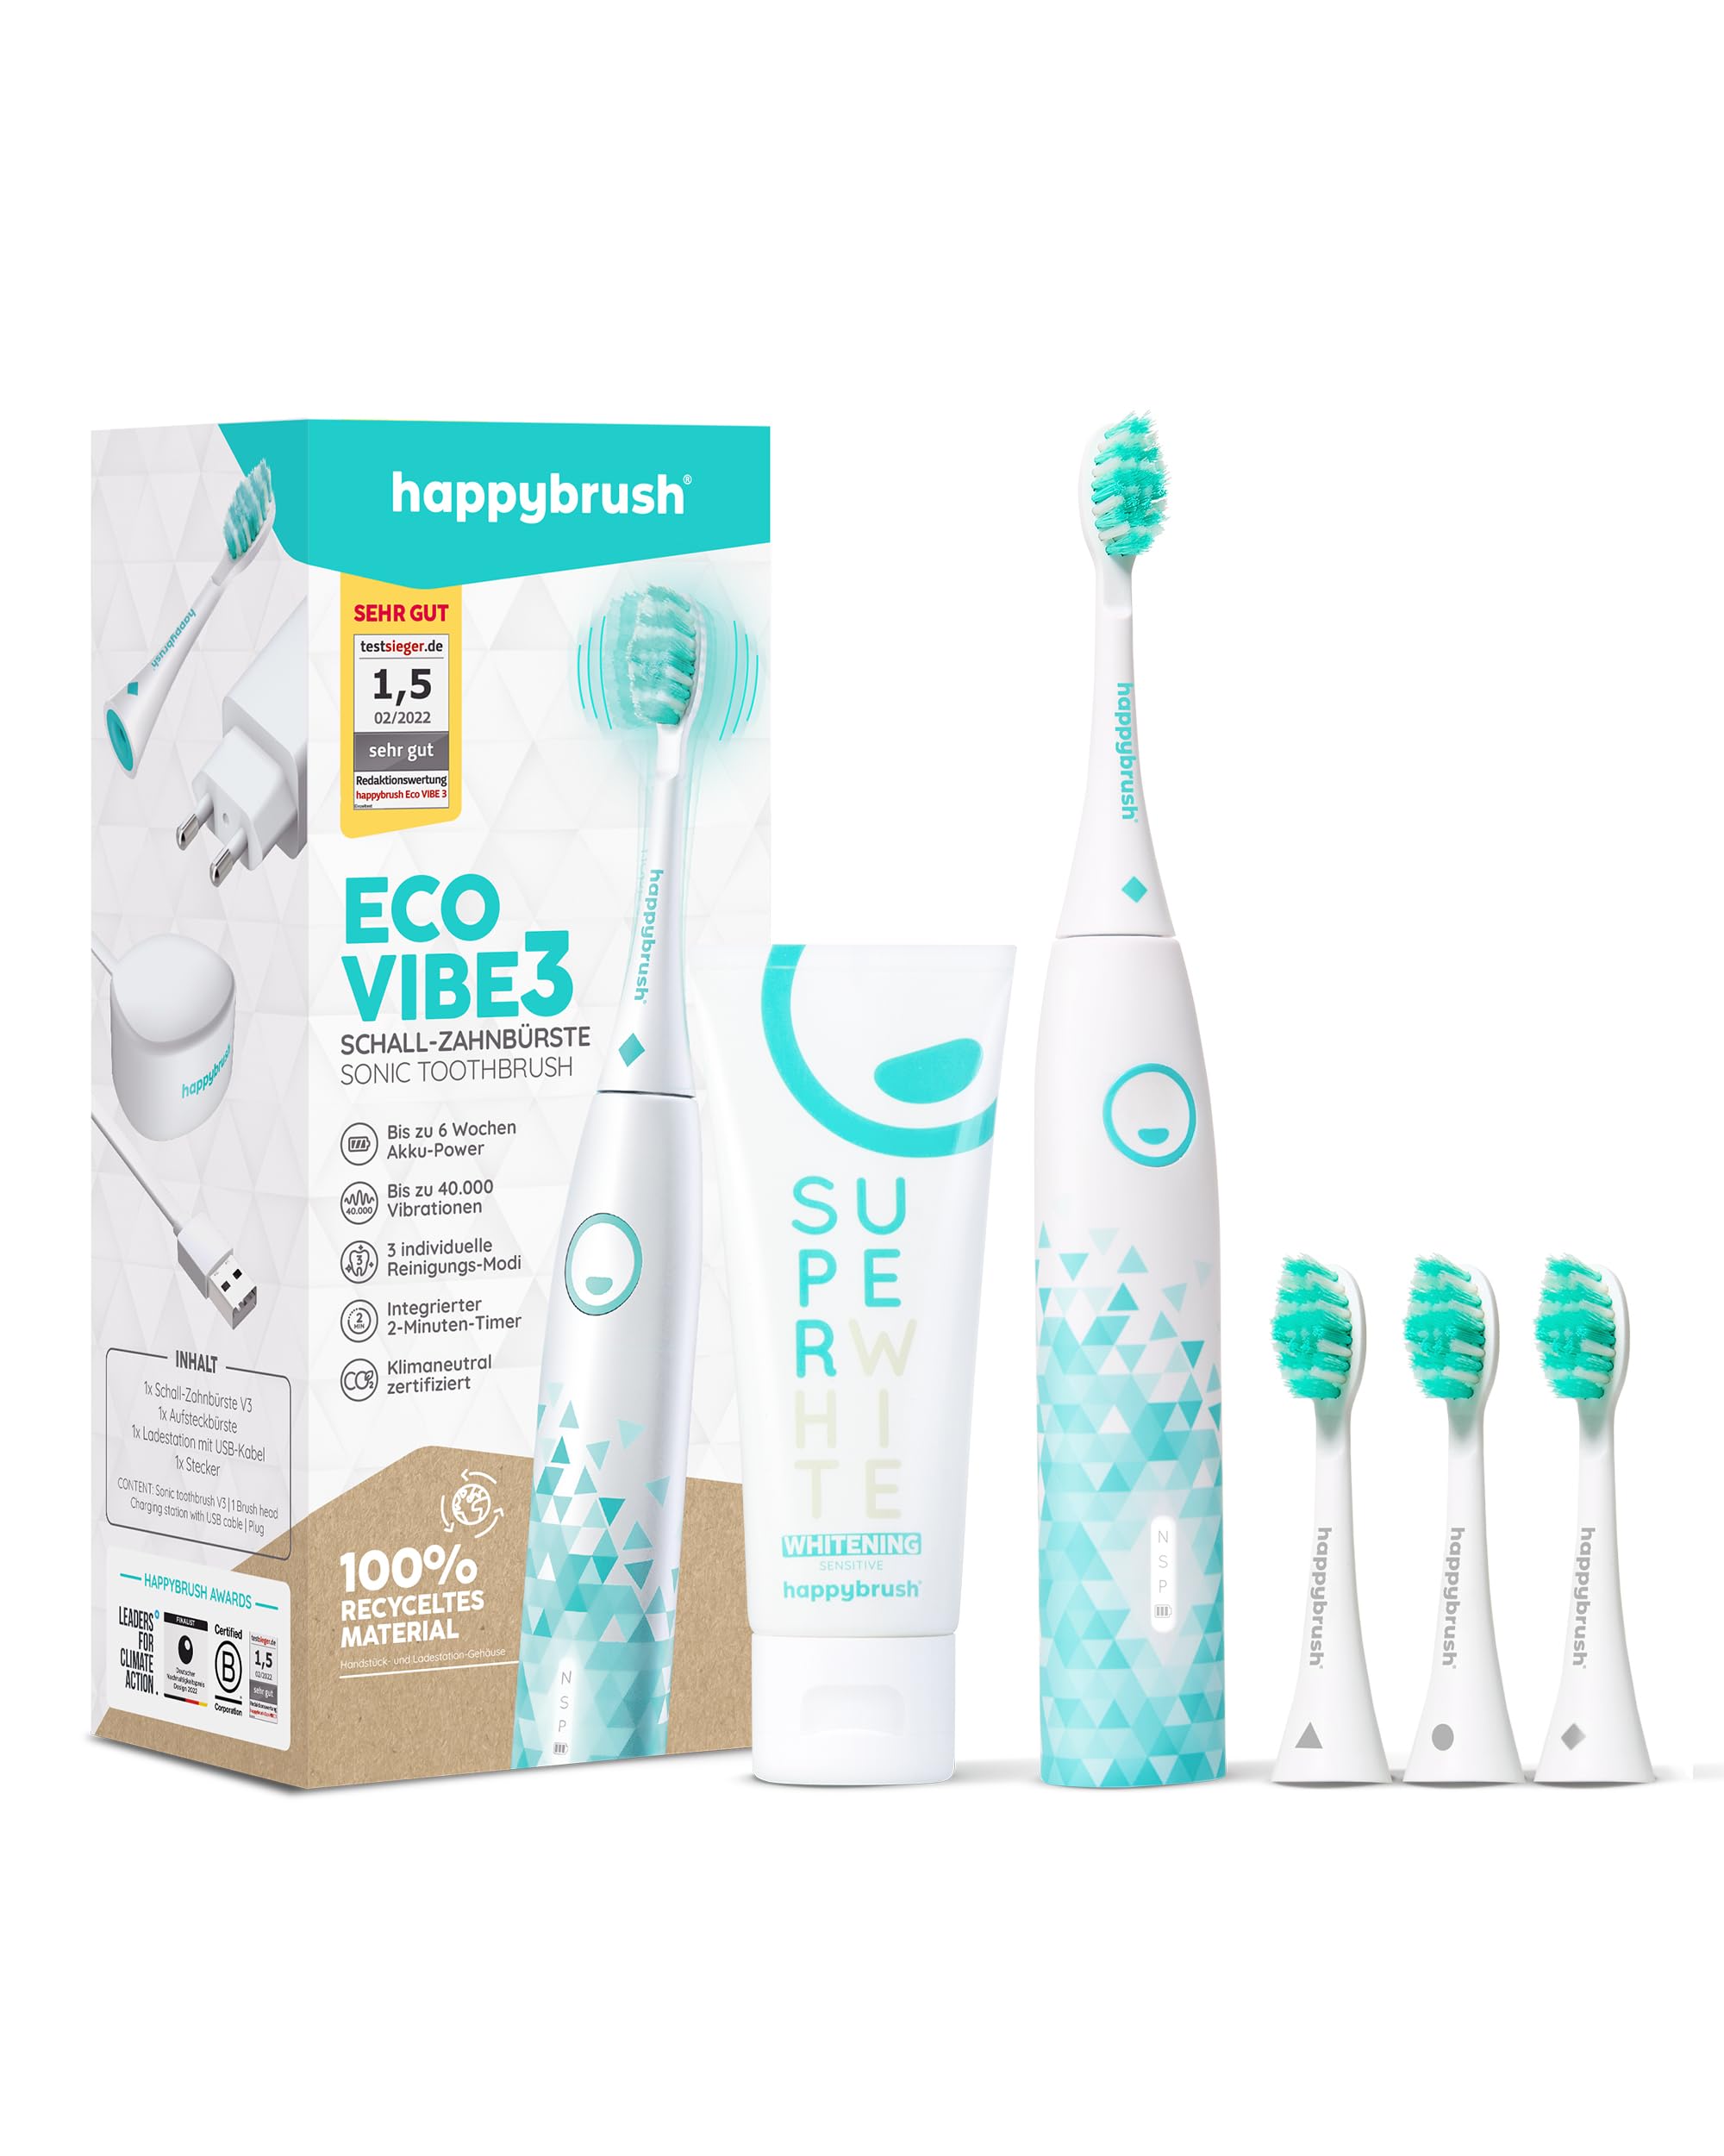 happybrush® Elektrische Schall-Zahnbürste Eco VIBE 3 - Nachhaltige Zahnbürste mit 6 Wochen Power-Akku inkl. 3 Aufsteckbürsten und Zahnpasta - Weiß/Mint